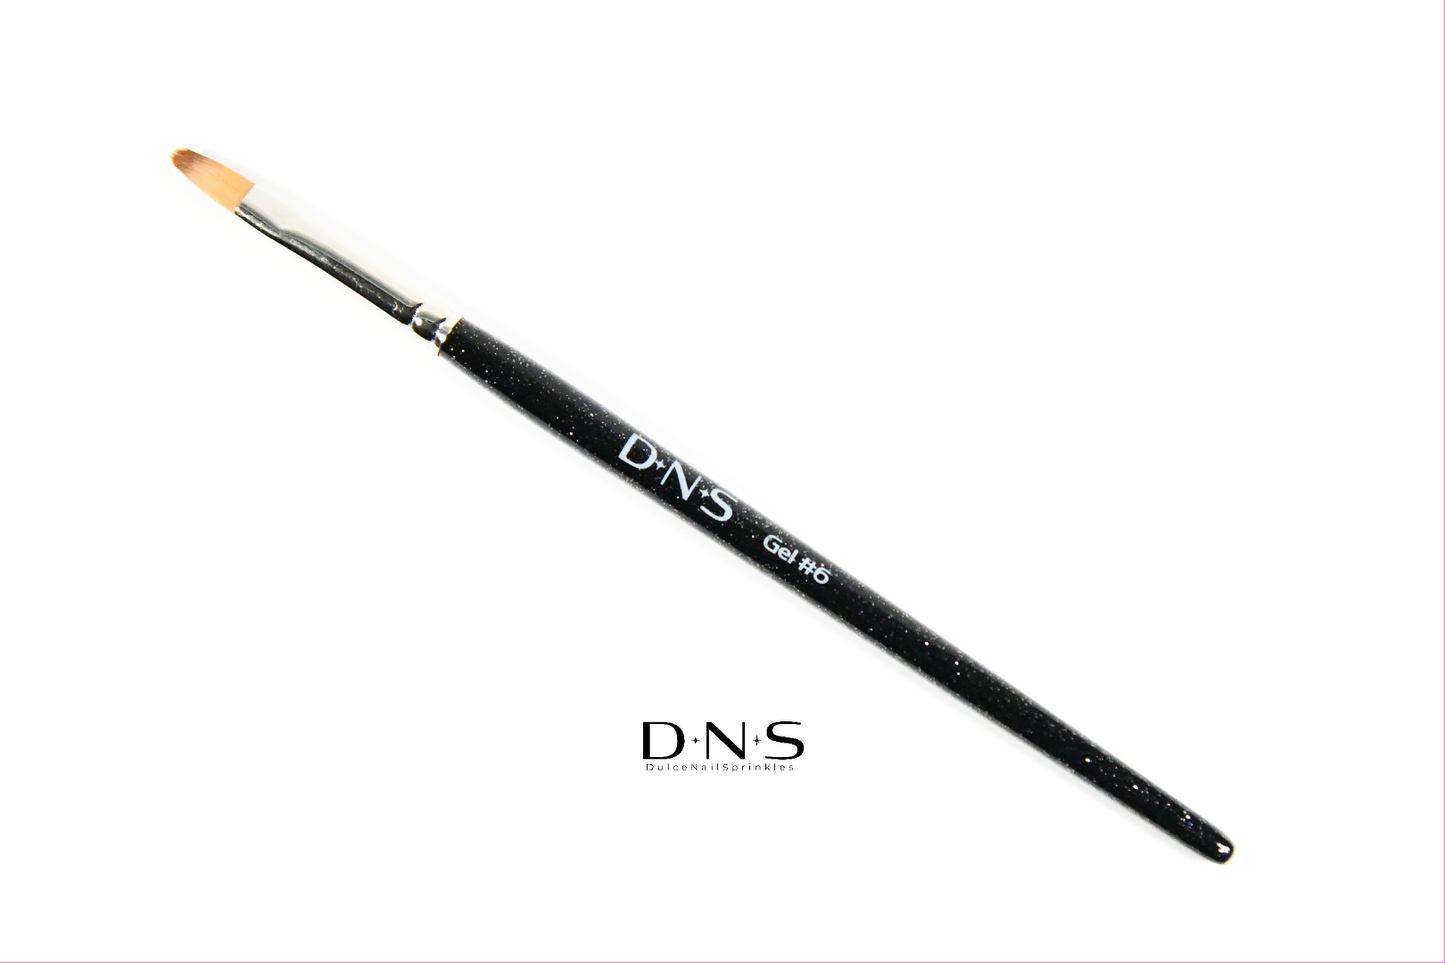 DNS #6 Gel Brush